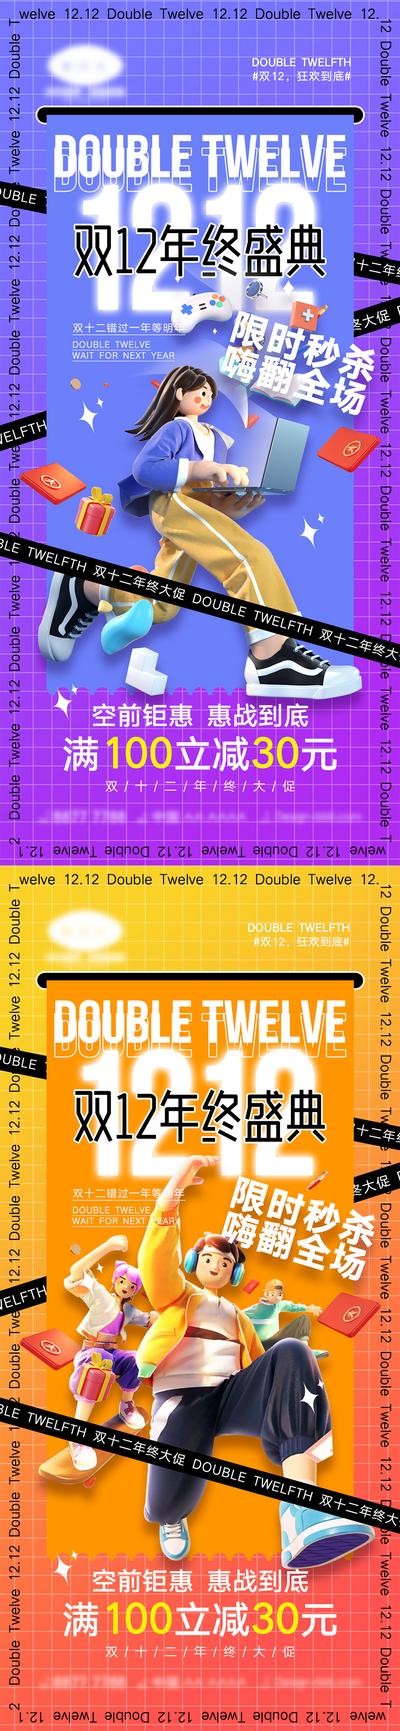 南门网 海报 活动 促销 双十一 狂欢 购物 优惠 双十一 双12 双十二 12.12